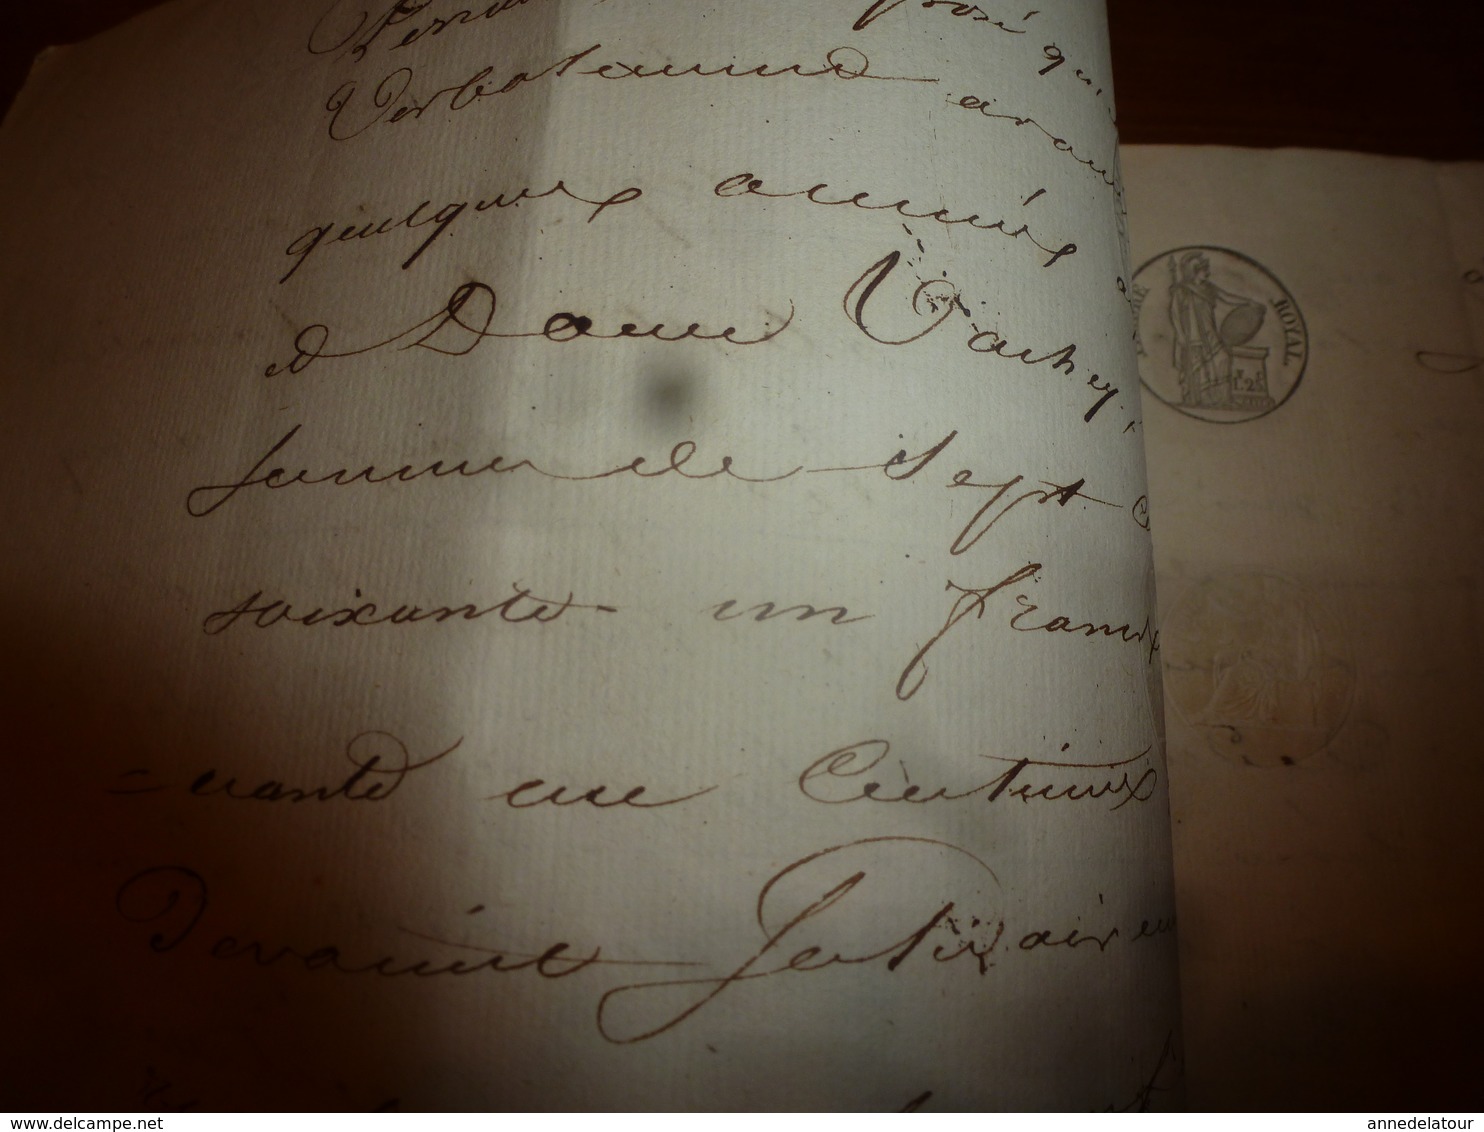 1839 Important manuscrit avec cachets sur jugement entre Marie-Anne Barbier et Sieur Perraud (Chatillon-sur-Seine)